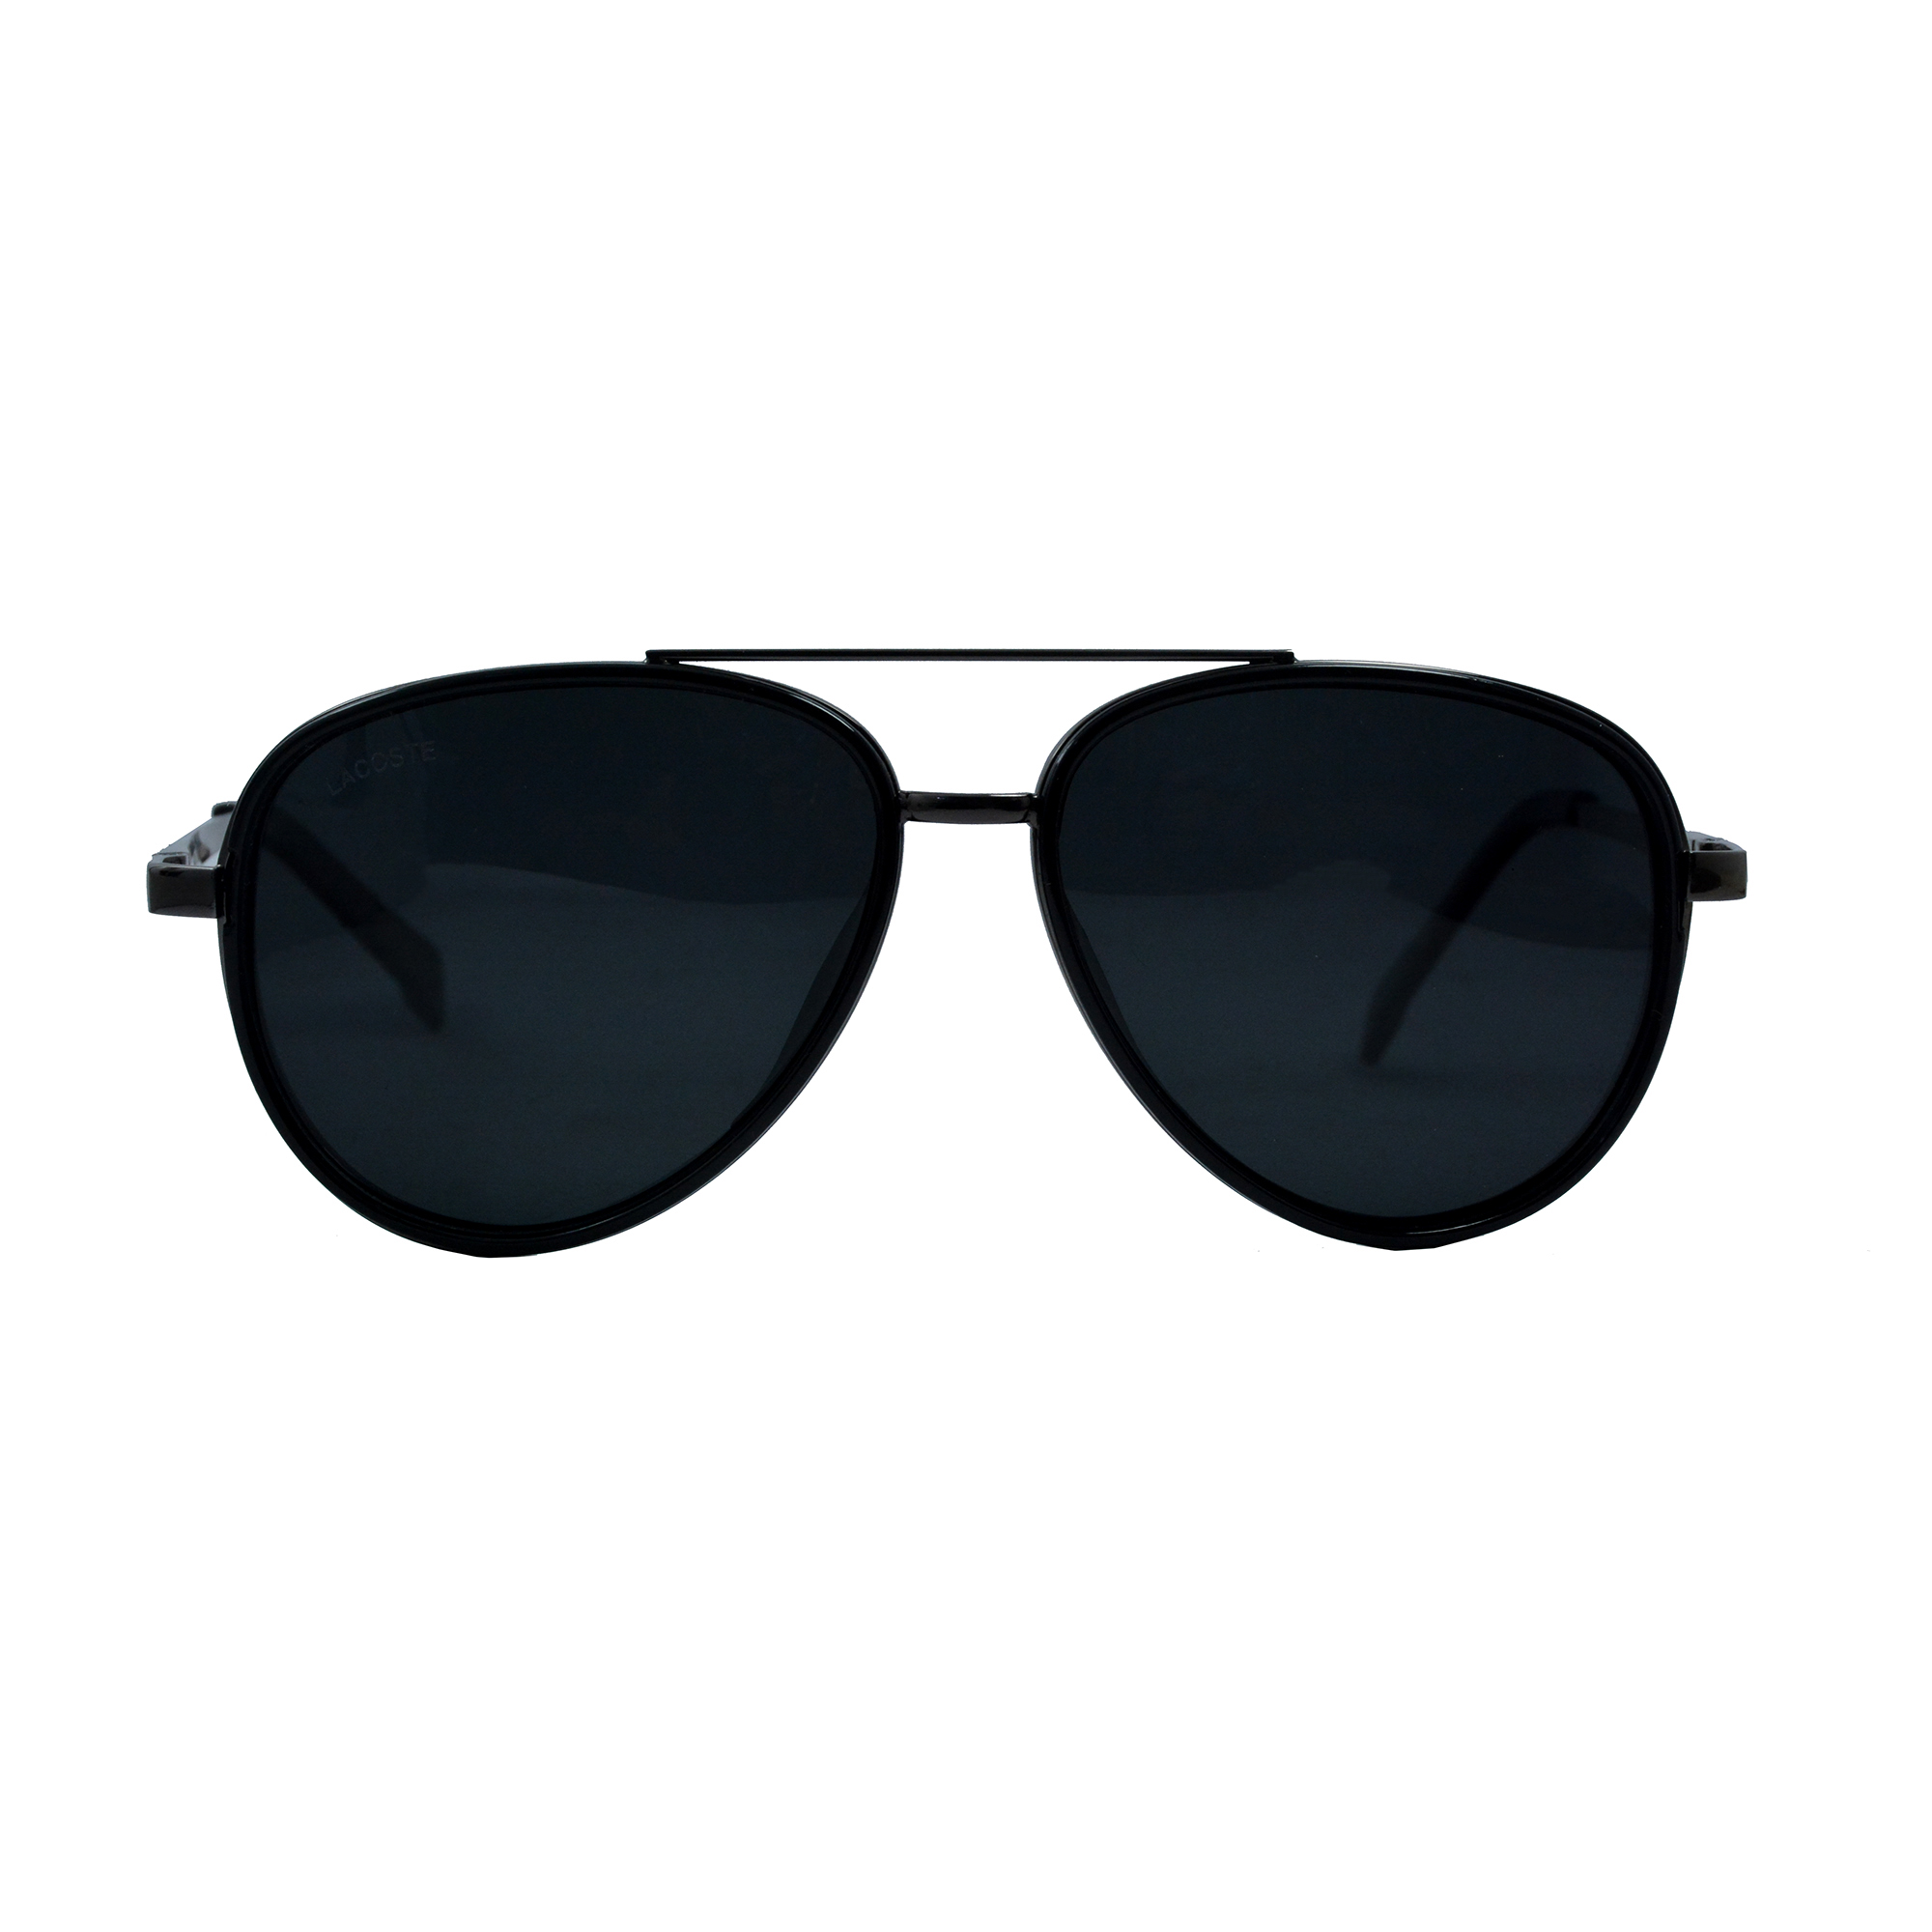 نکته خرید - قیمت روز عینک آفتابی لاگوست مدل L122 5615135 TI POLARIZED خرید